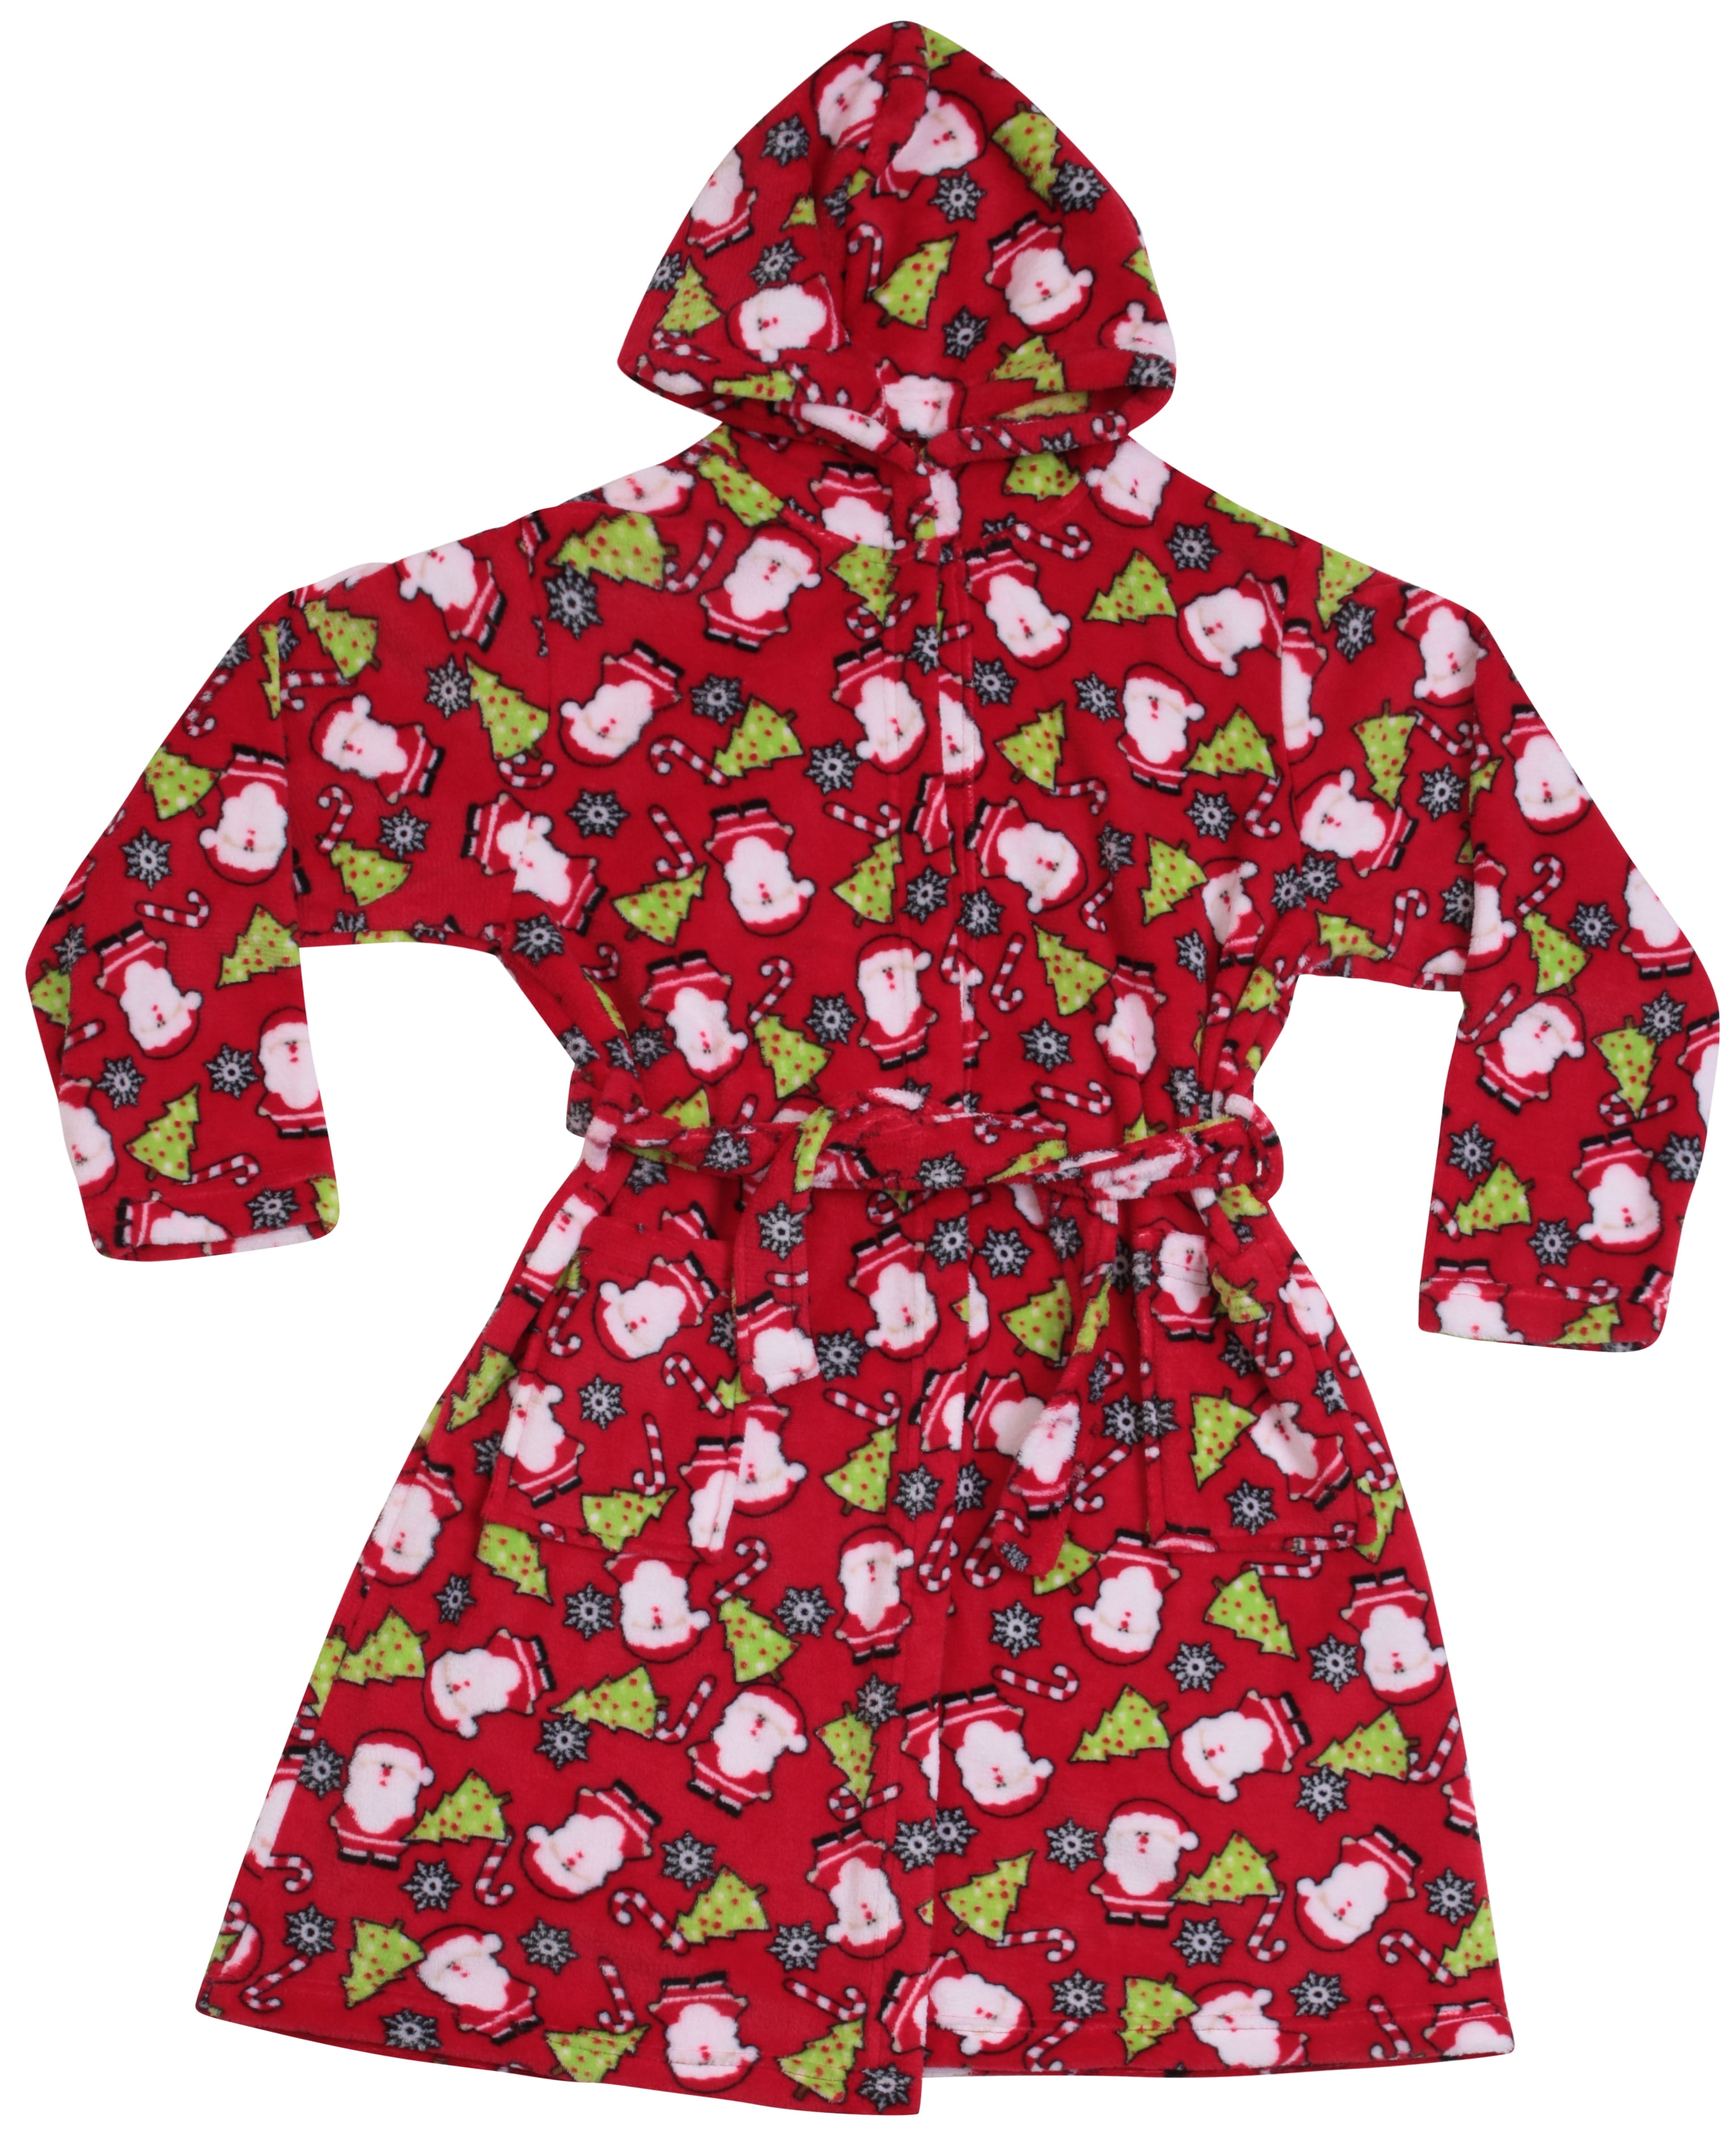 Just Love Hooded Plush Fleece Robe for Girls 